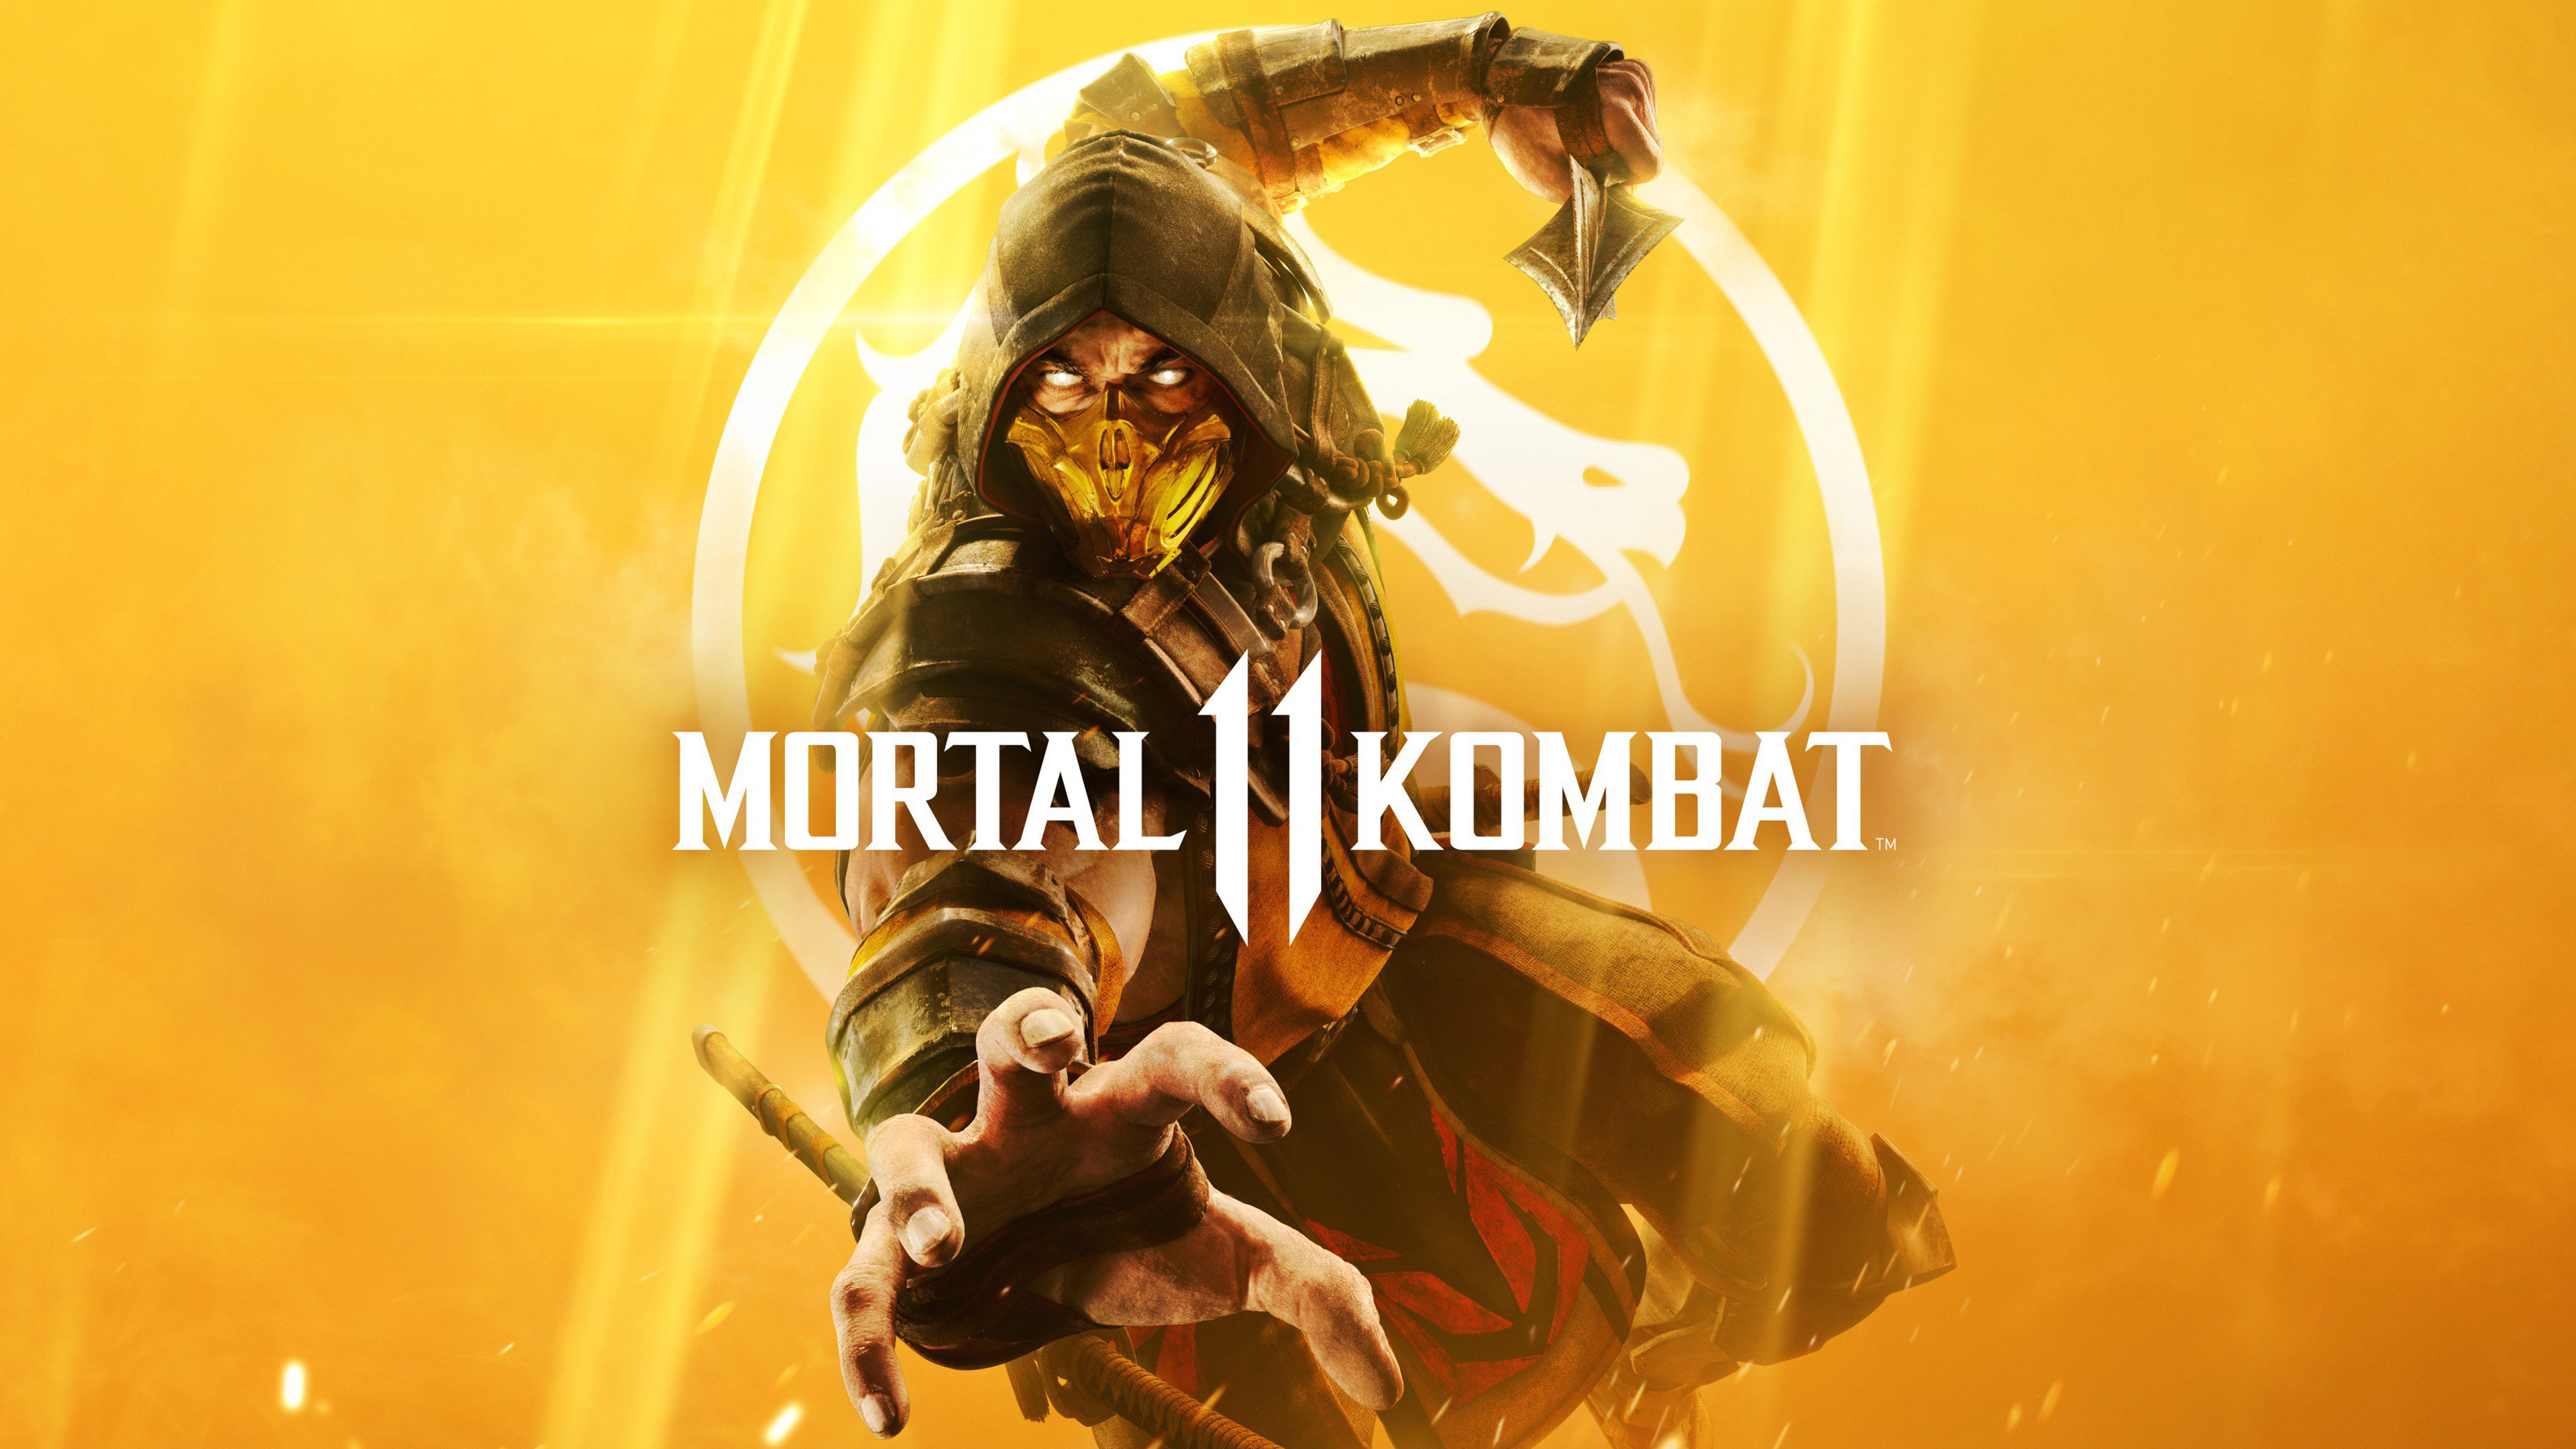 Mortal Kombat 11 Cover Art 4K Wallpapers